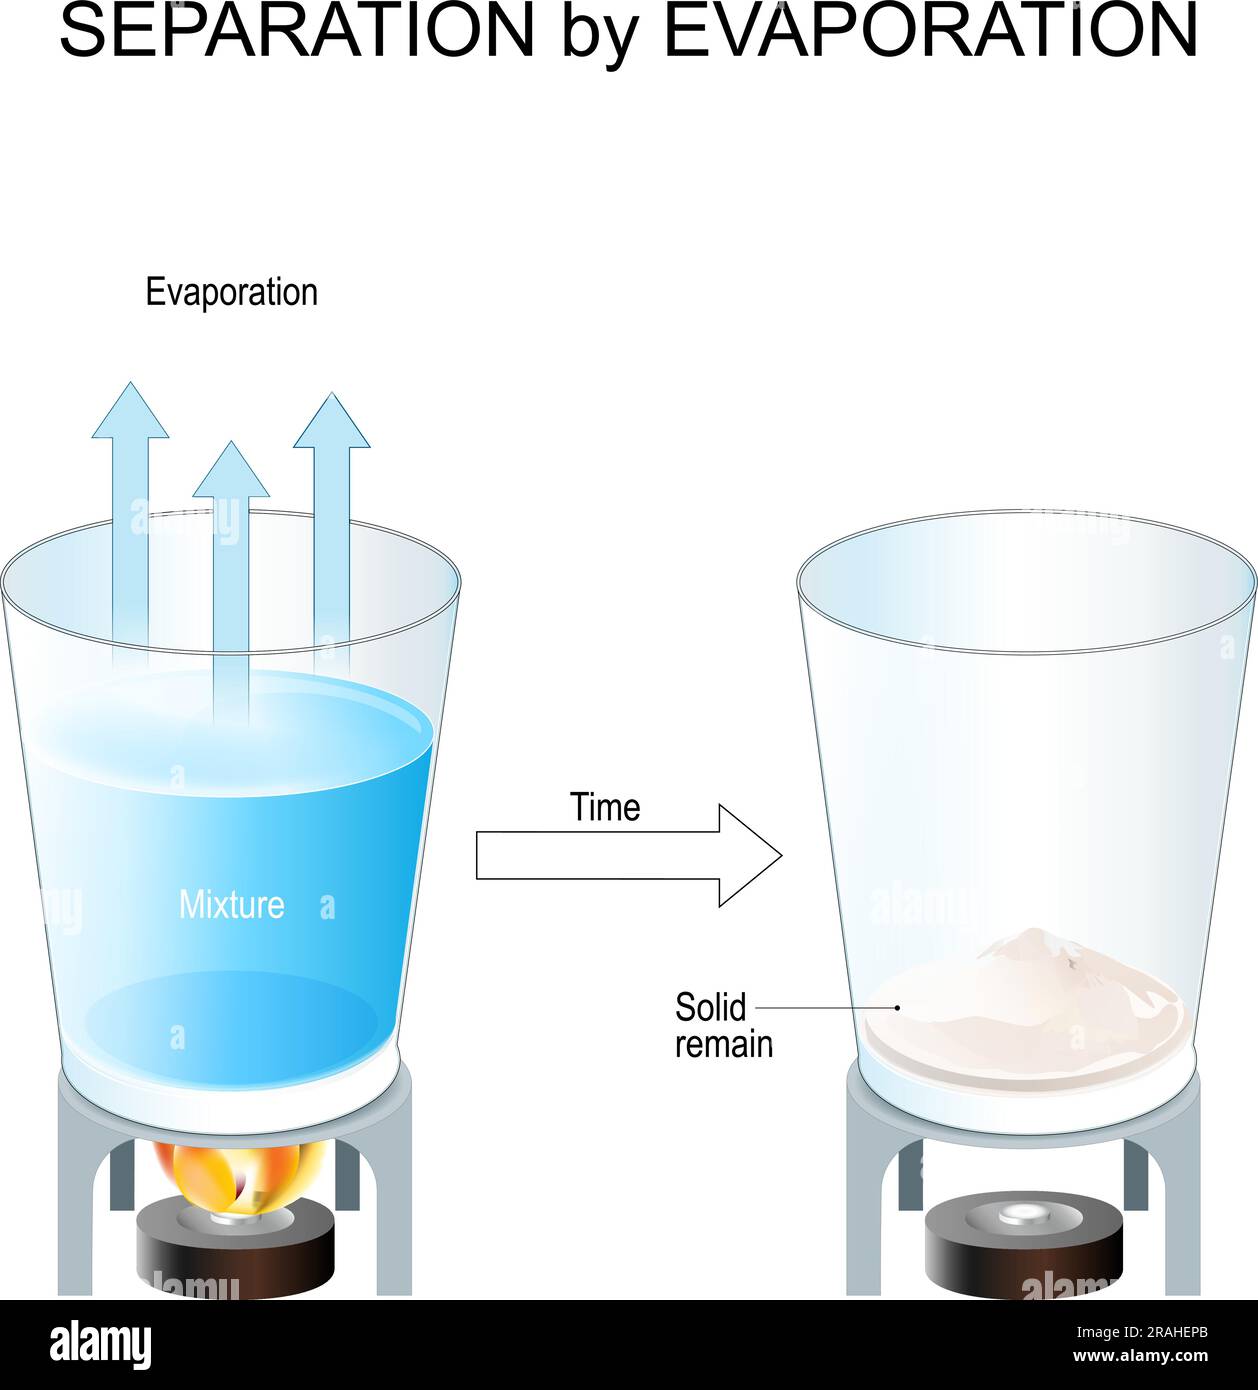 Séparation par évaporation. Méthode de séparation des composants d'un mélange solide-liquide. Chimie organique. Extraction du sel. expérience scientifique Illustration de Vecteur